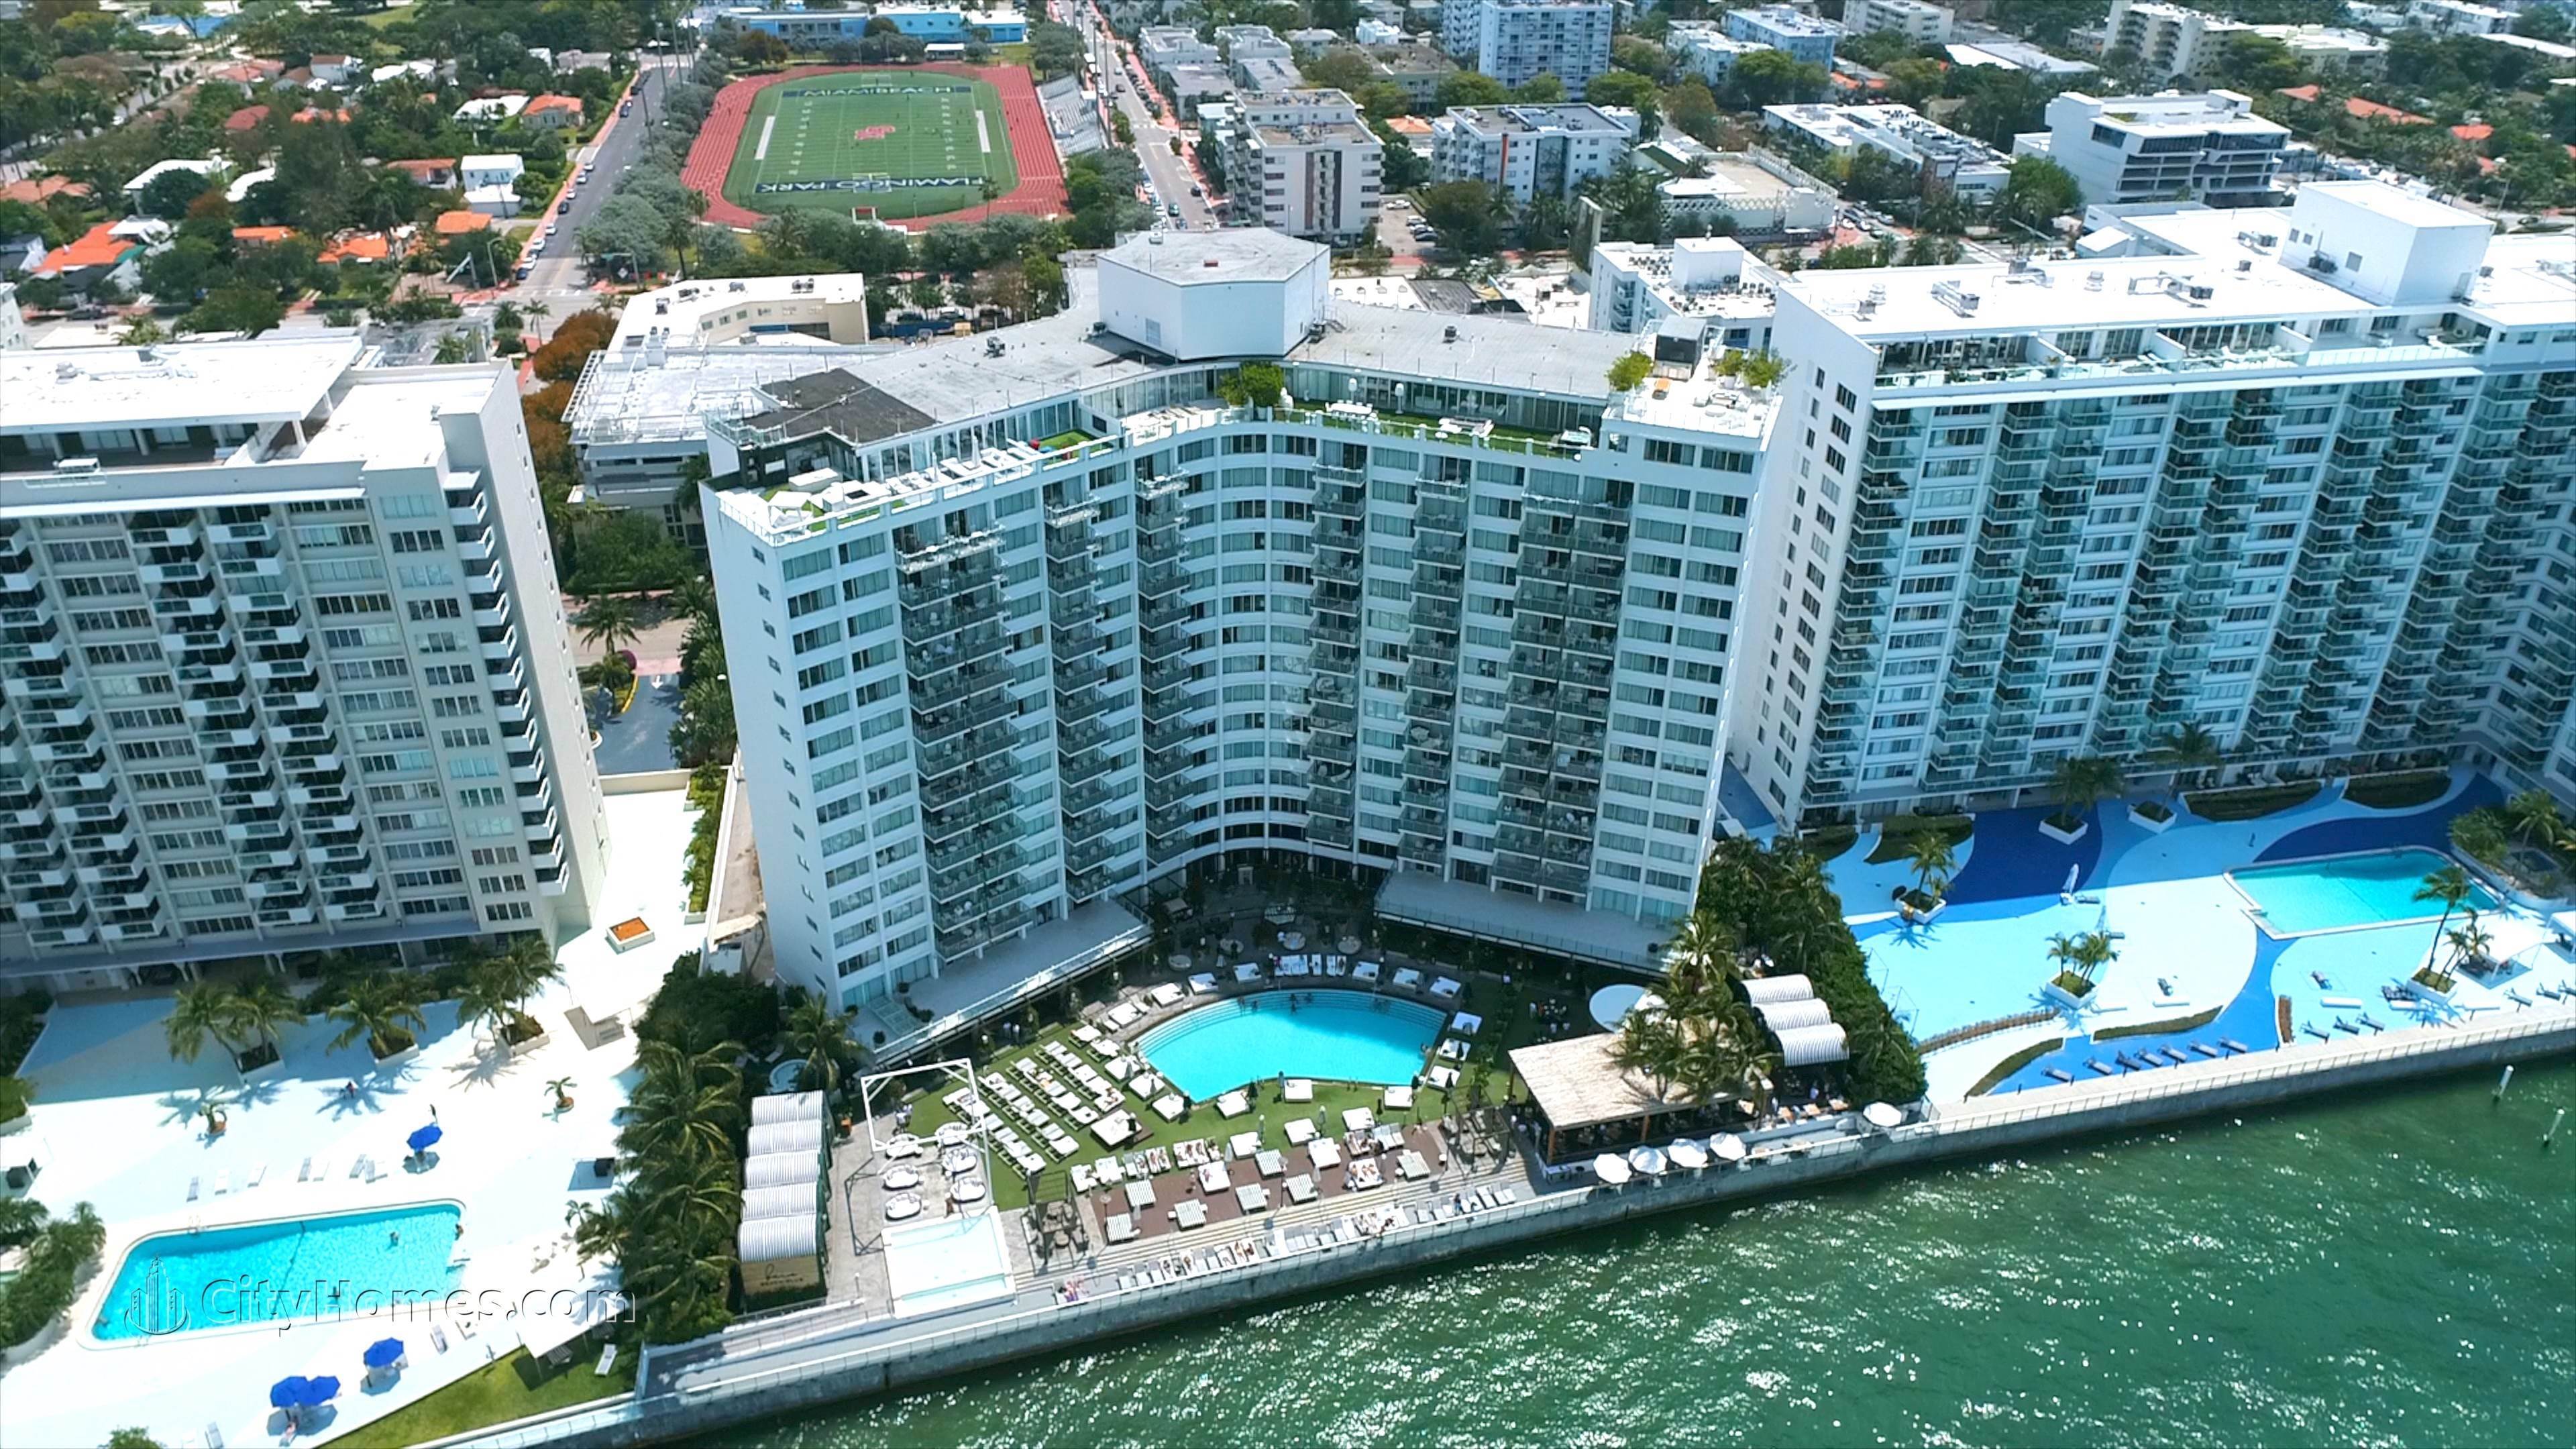 MONDRIAN SOUTH BEACH prédio em 1100 West Avenue, Flamingo / Lummus, Miami Beach, FL 33139